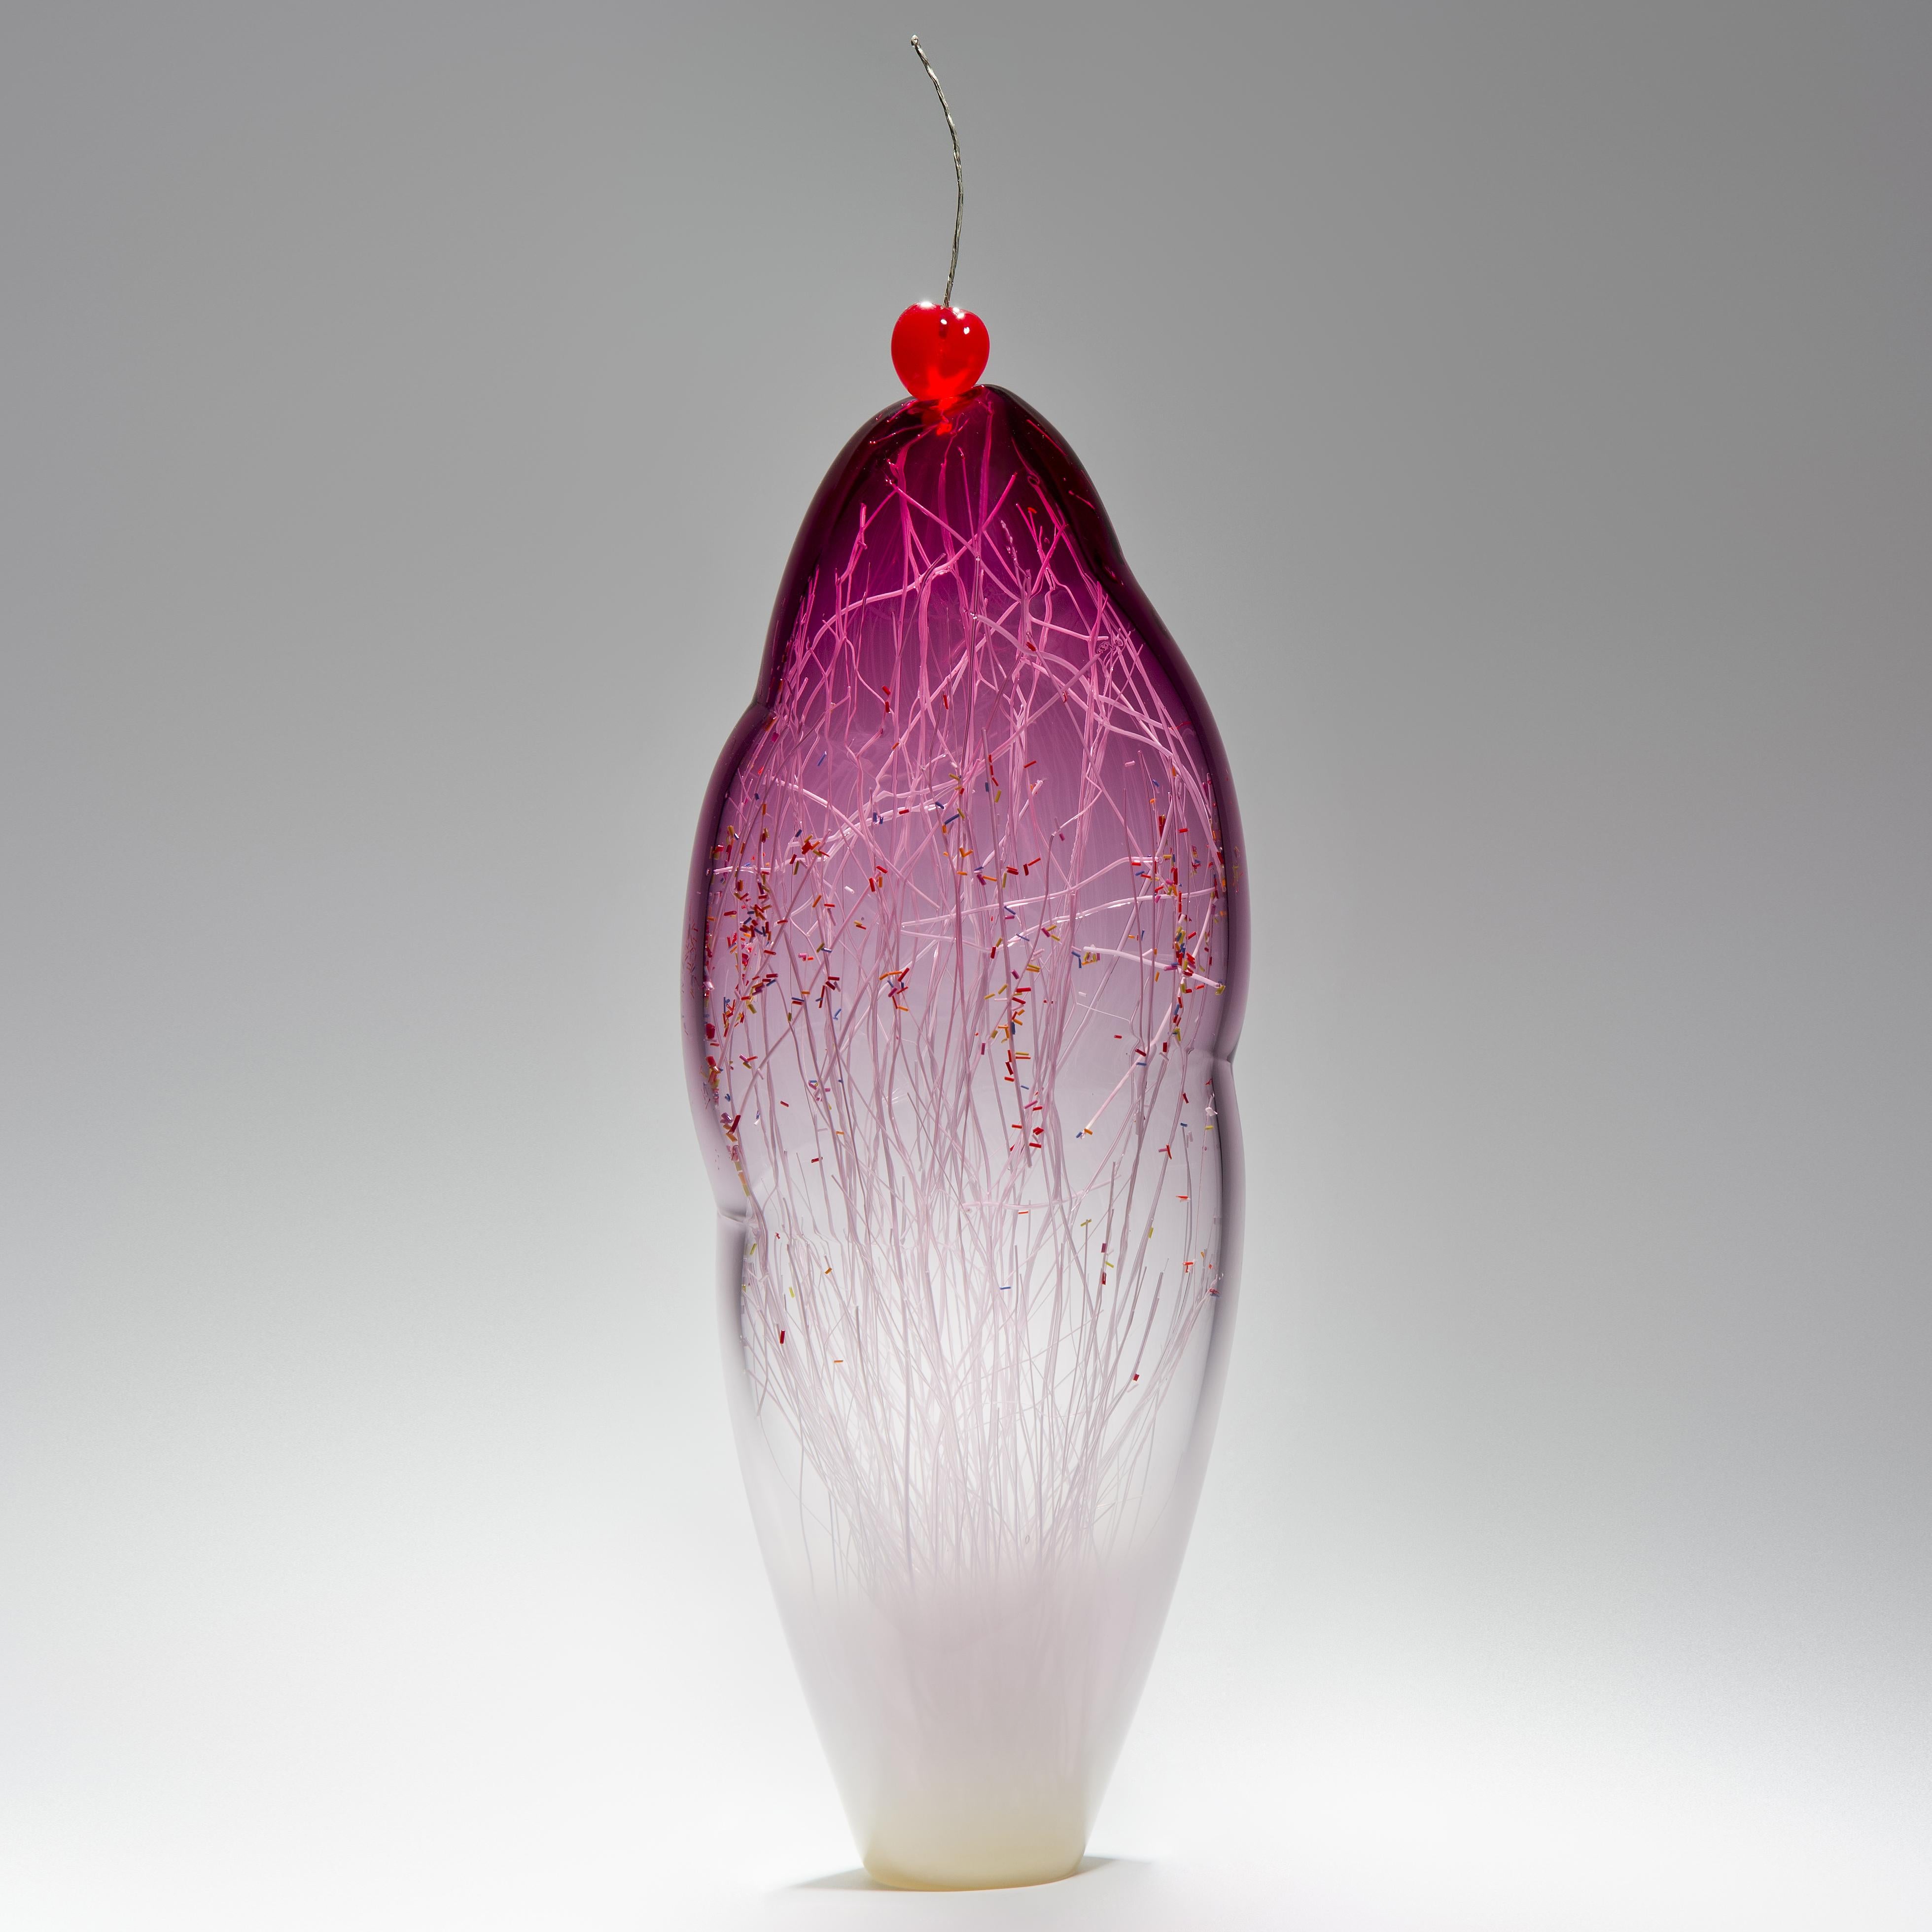 Temptation I est une sculpture en verre soufflé à la bouche réalisée par les artistes Hanne Enemark (Danemark) et Louis Thompson (Royaume-Uni). Elle comprend une forme extérieure en verre transparent et rose qui contient une multitude de cannes en